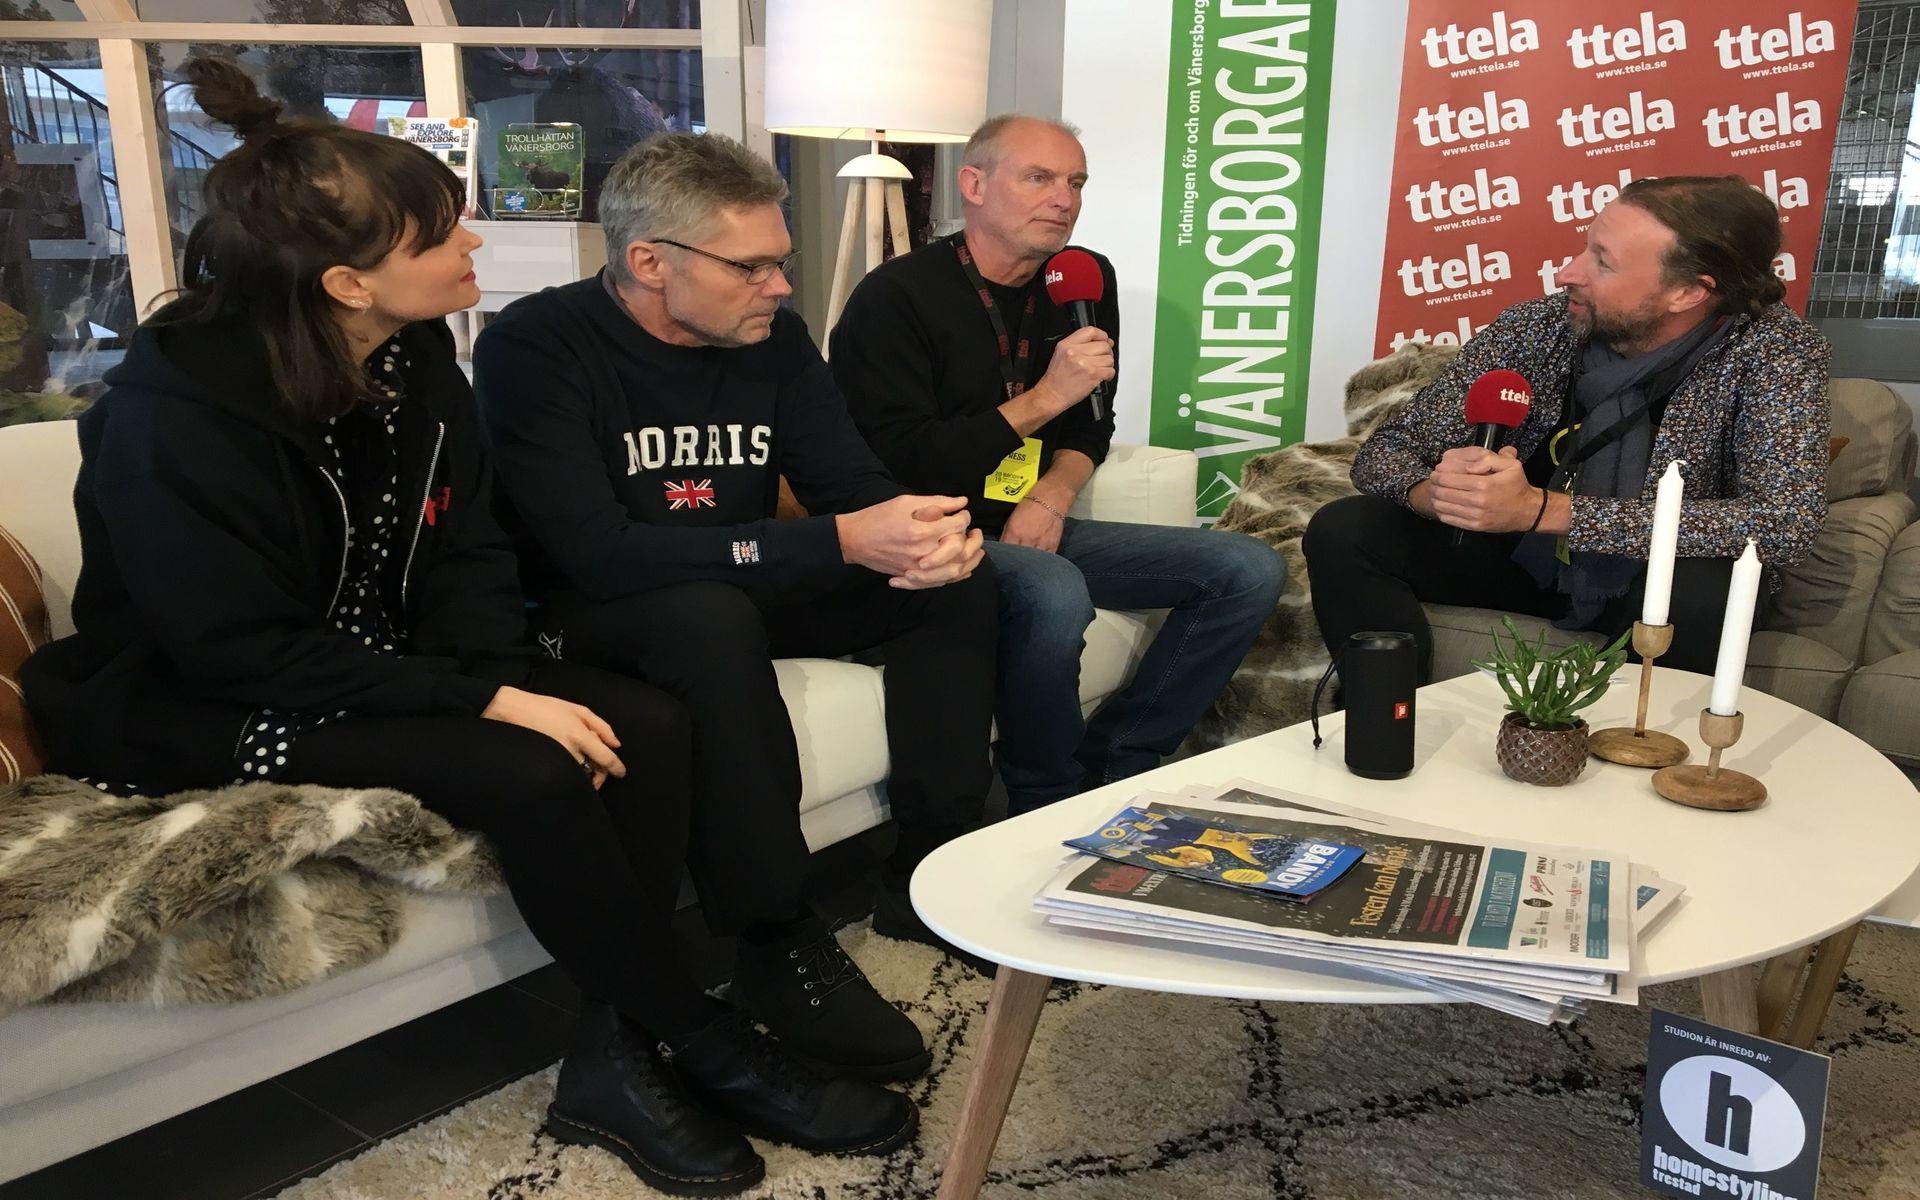 TTELA-sporten, Johanna Josephsson, Ulf Thuresson och Toni Andersson, intervjuas av Jonas Myrholm.